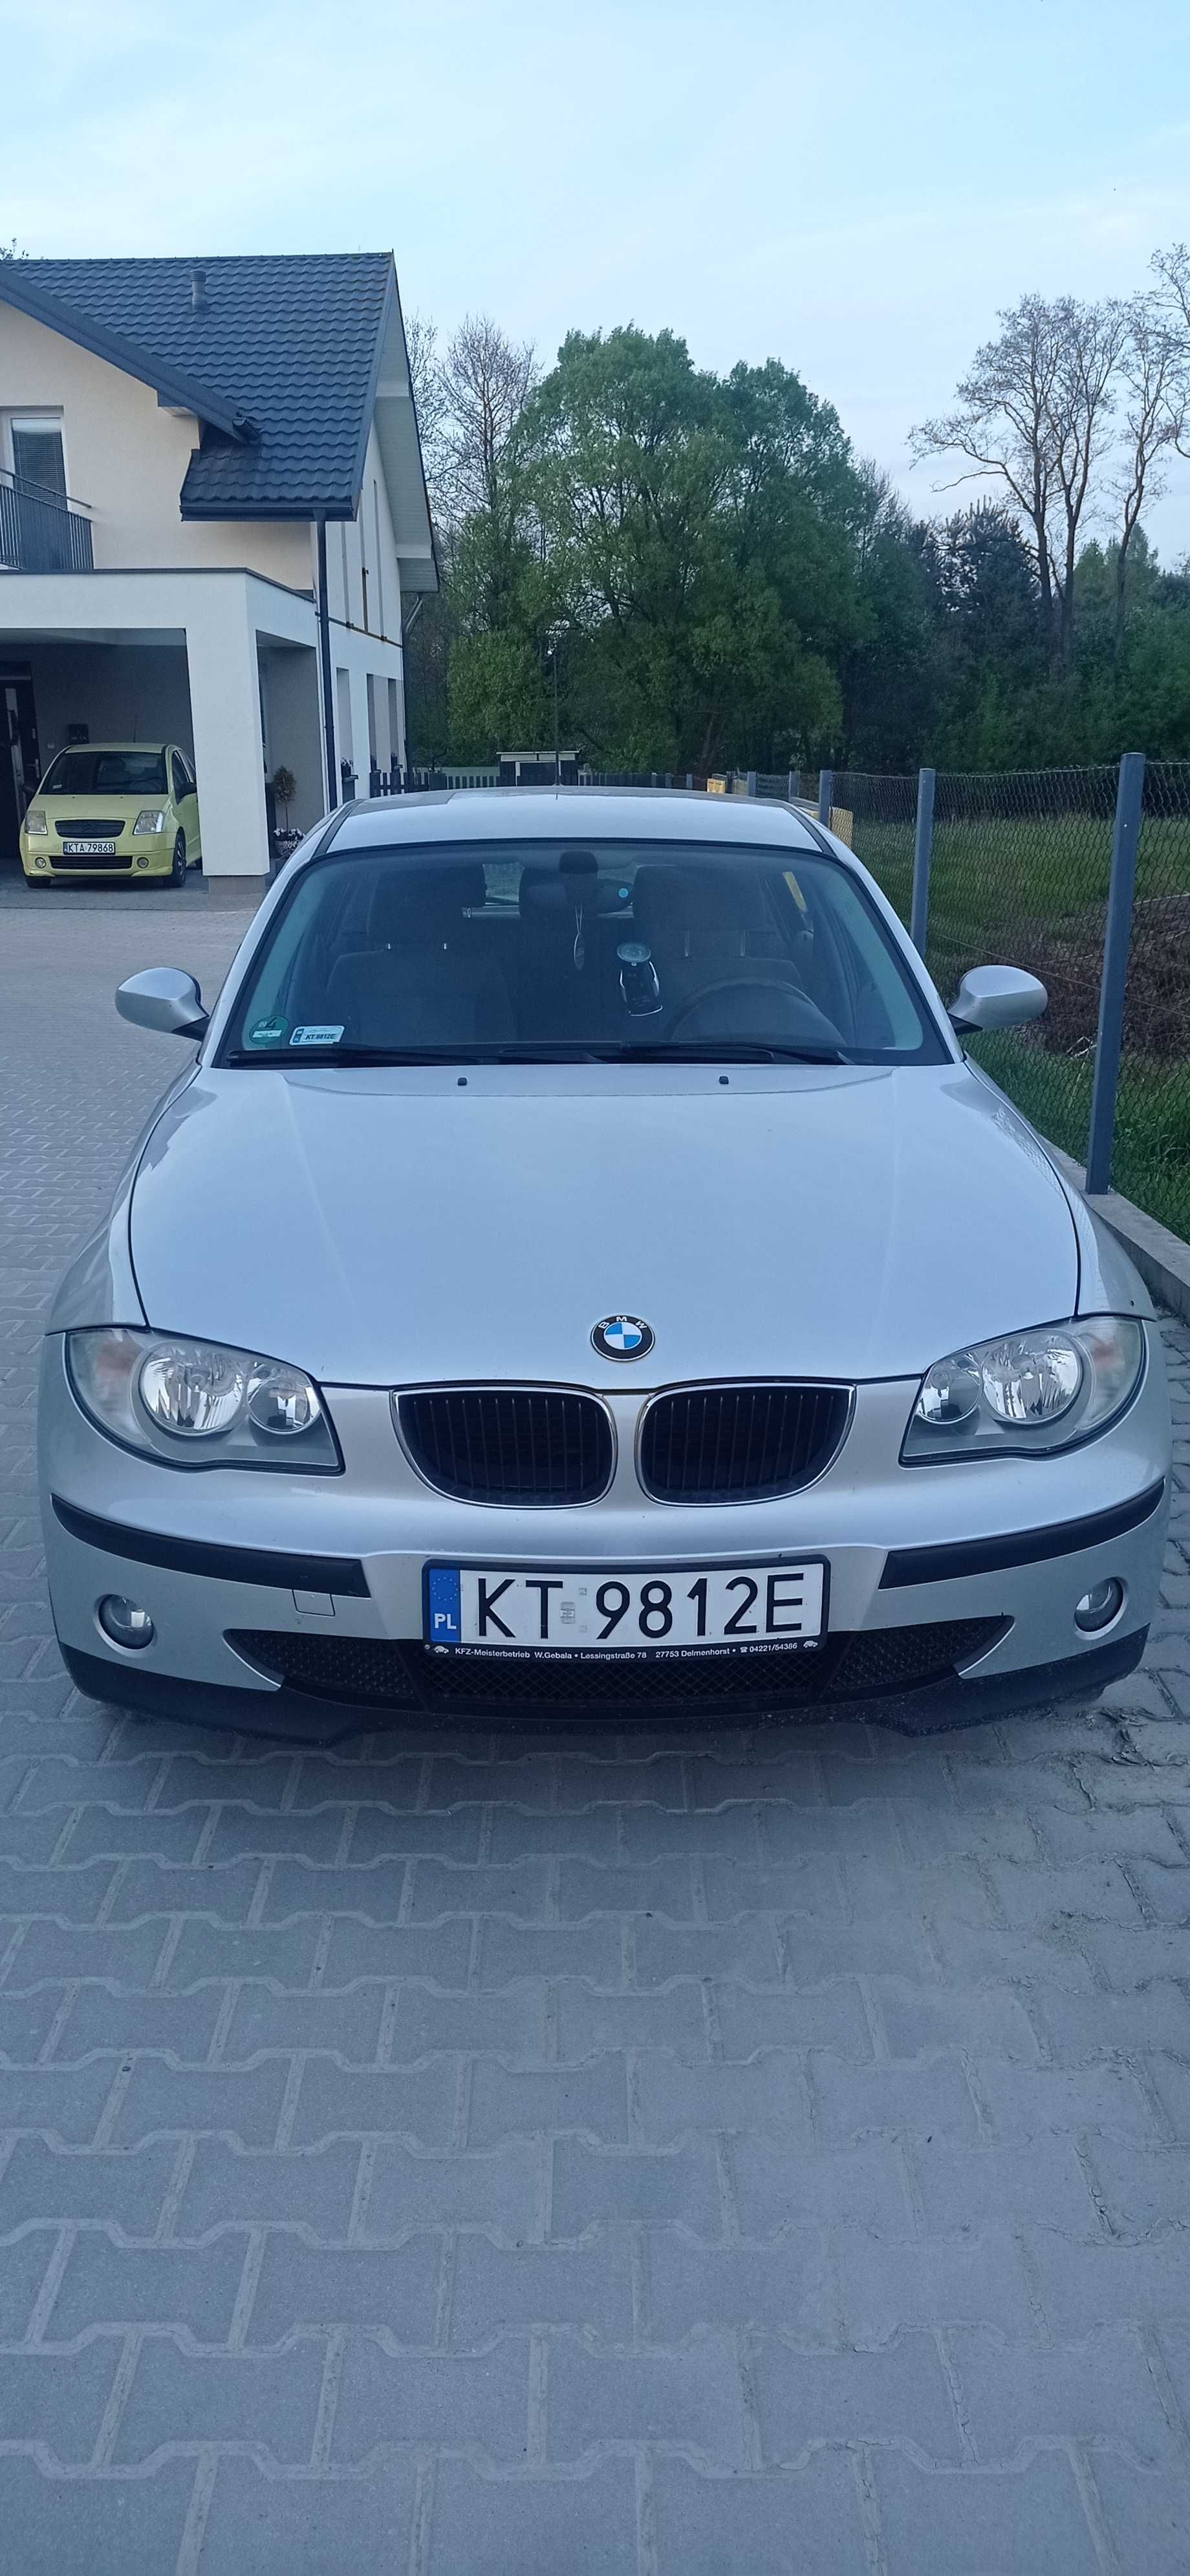 BMW seria 1 2006 rok benzyna 1,6, klima